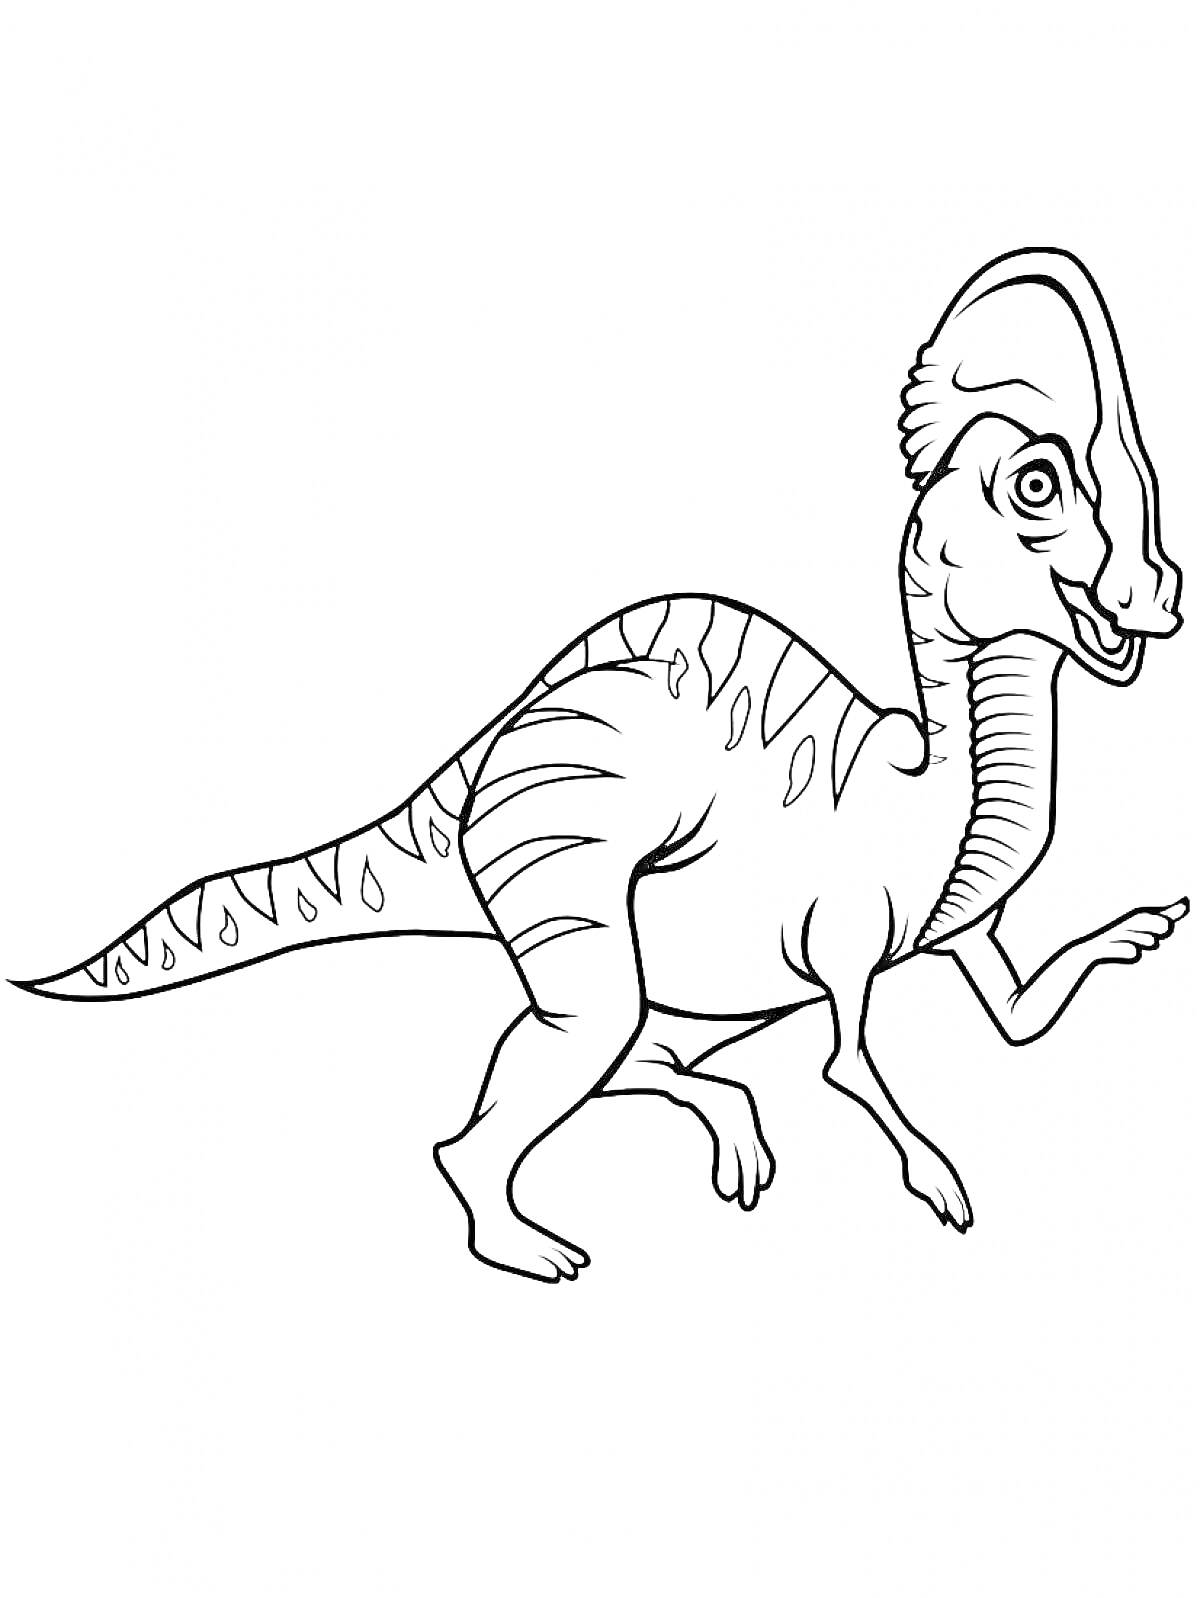 Раскраска Динозавр с гребнем, стоящий на двух ногах